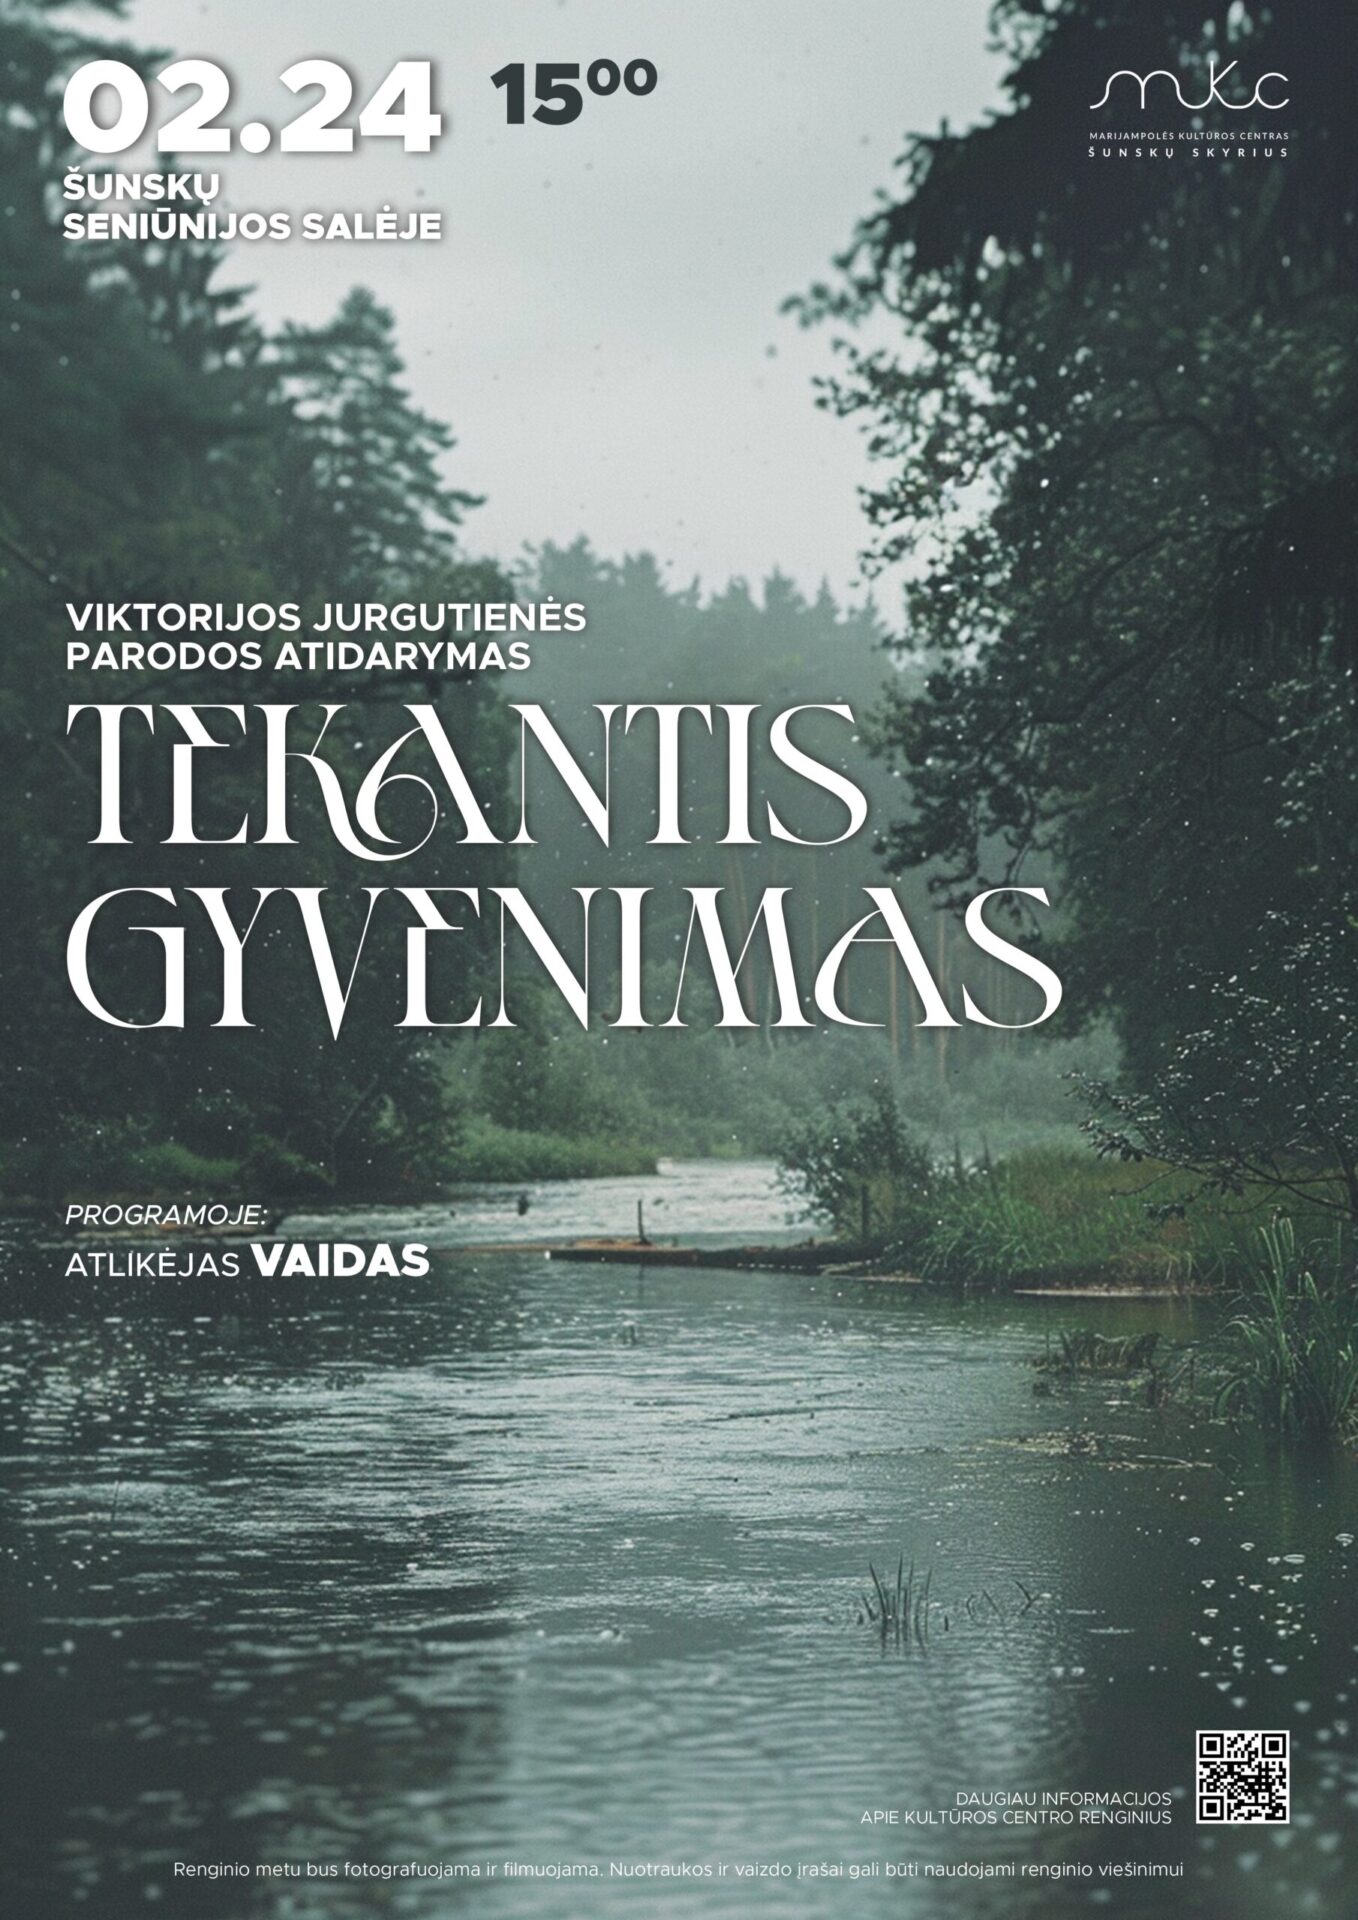 Viktorijos Jurgutienės parodos „Tekantis gyvenimas” atidarymas Šunskuose